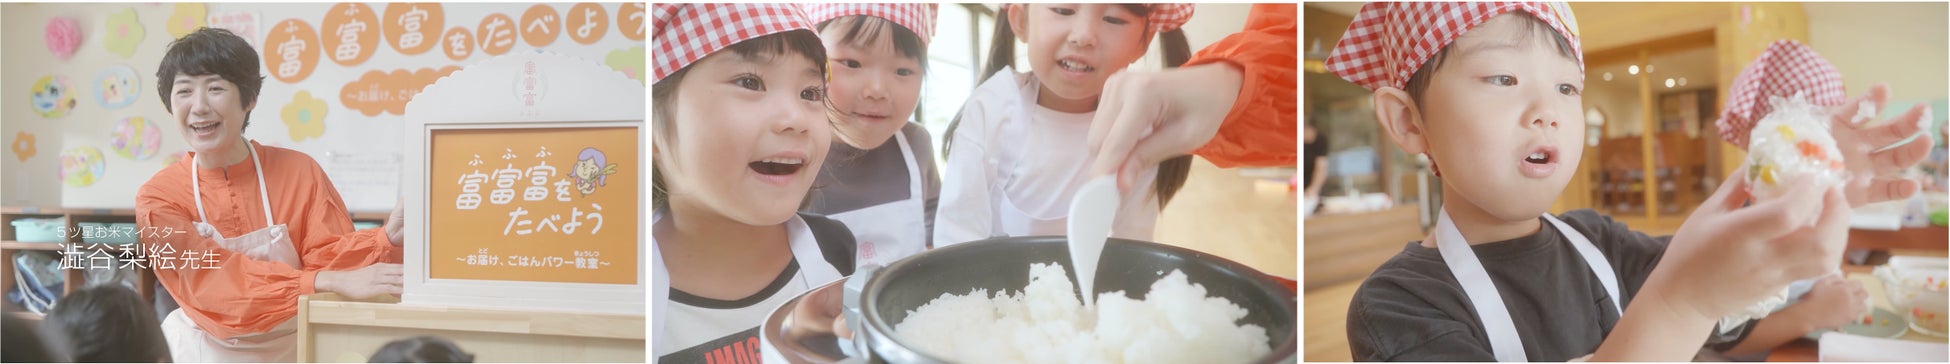 美味しいお米には自然の学びがある。水を大切にする富山の人たちがつくる『富富富』のサブ画像3